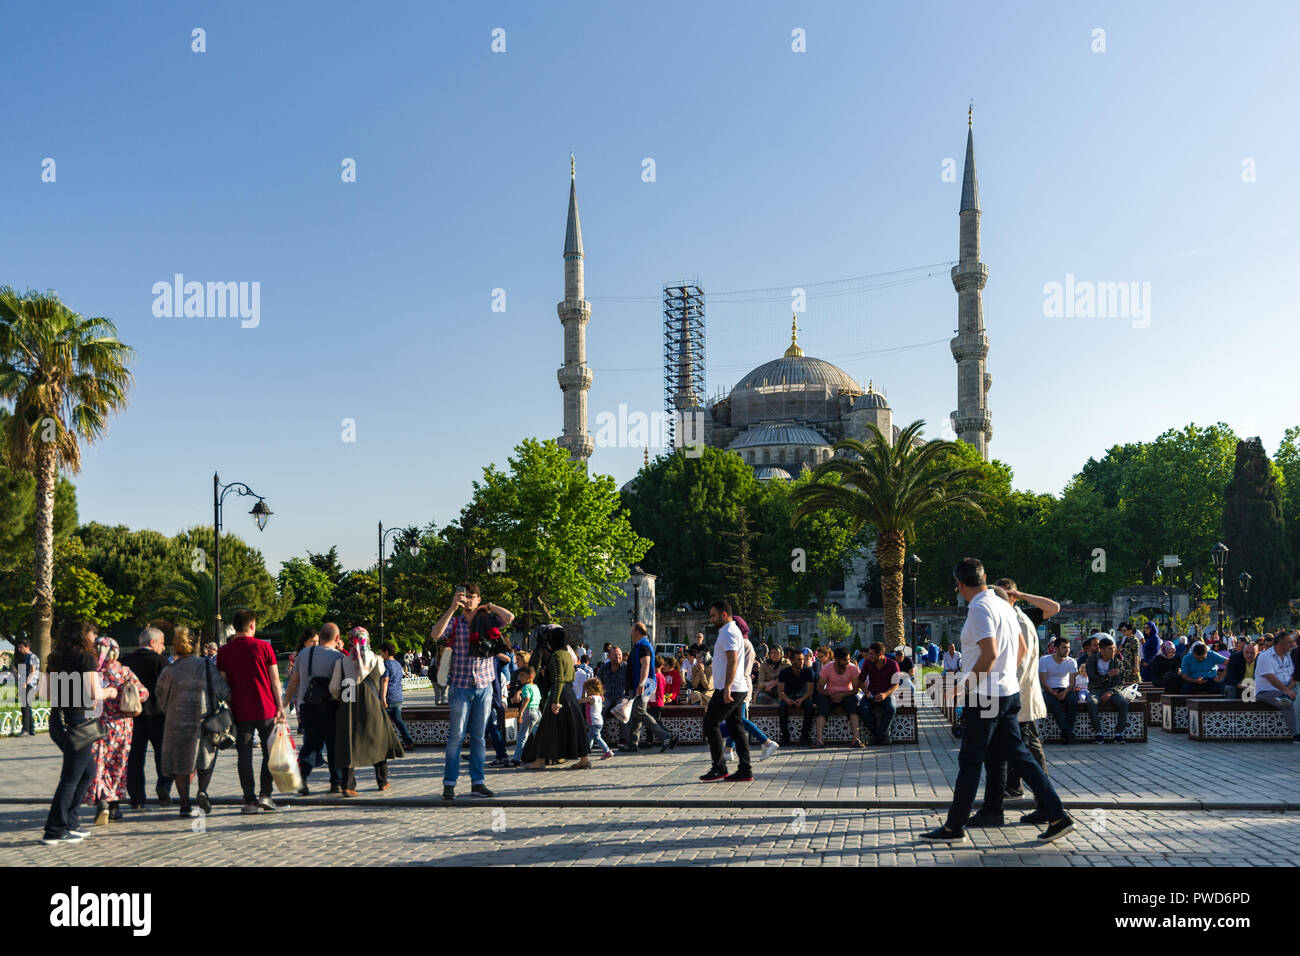 Mosquée Sultan Ahmet ou la Mosquée Bleue en rénovation avec les touristes marcher dans le parc archéologique de bleu dans la lumière de fin d'après-midi, Istanbul Banque D'Images